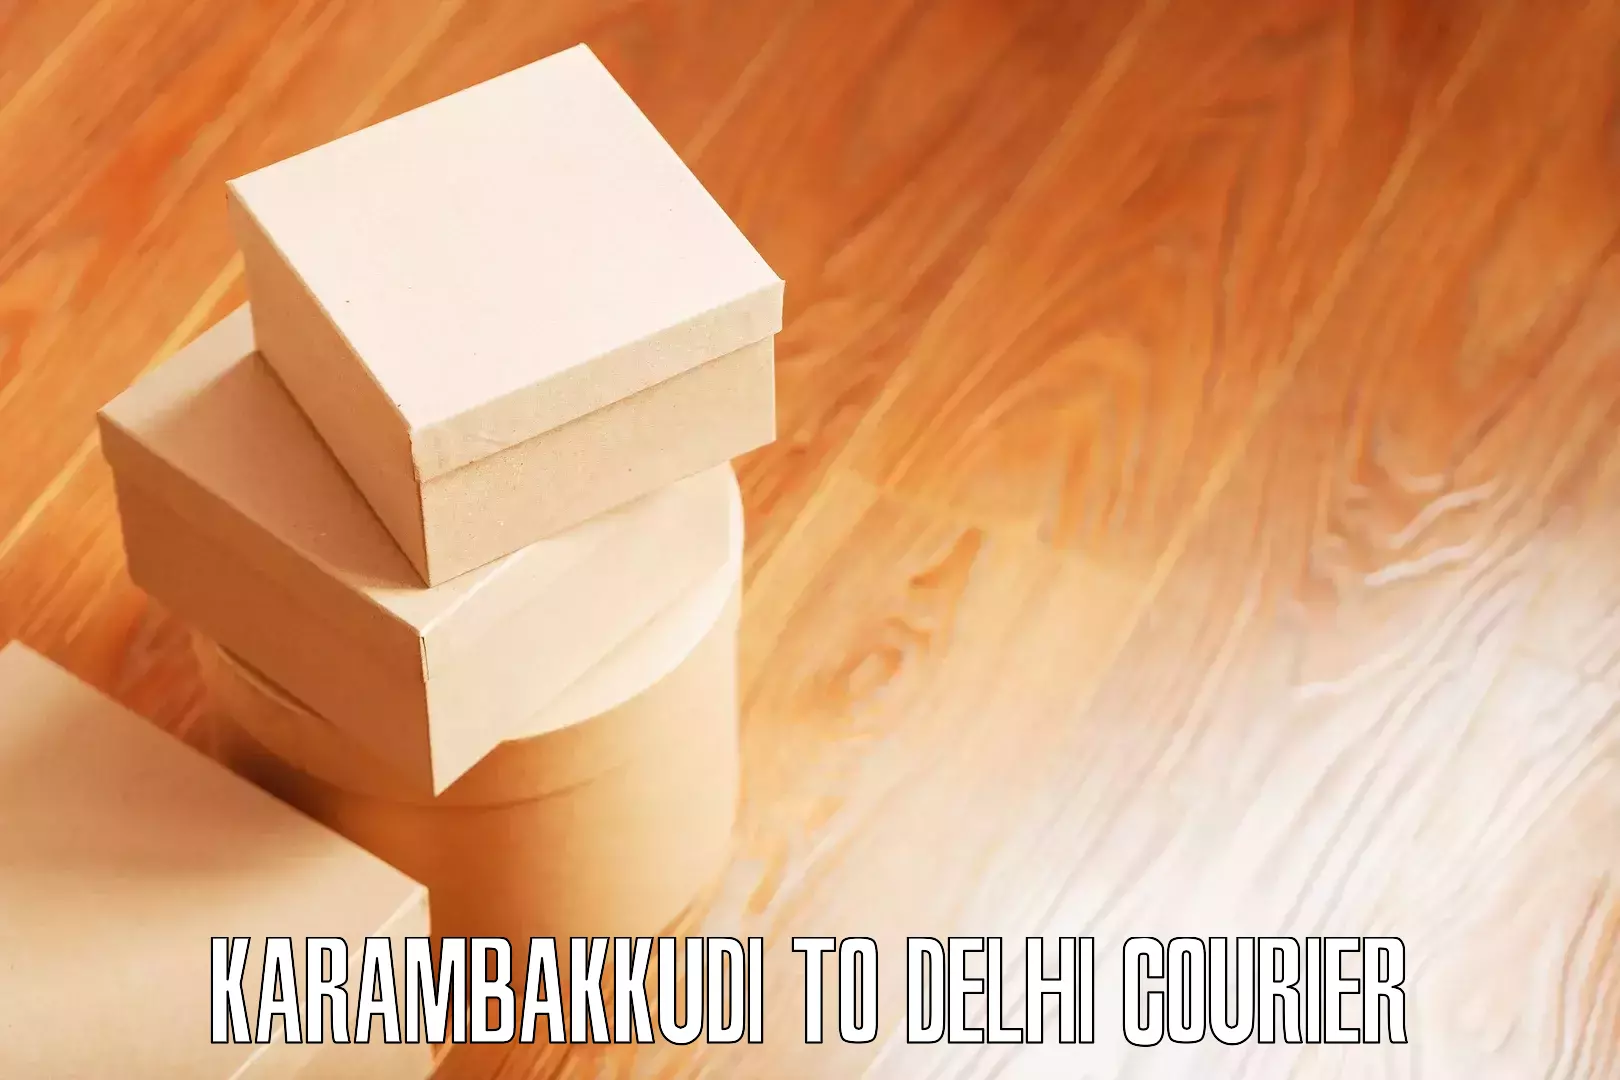 Household goods transport in Karambakkudi to University of Delhi